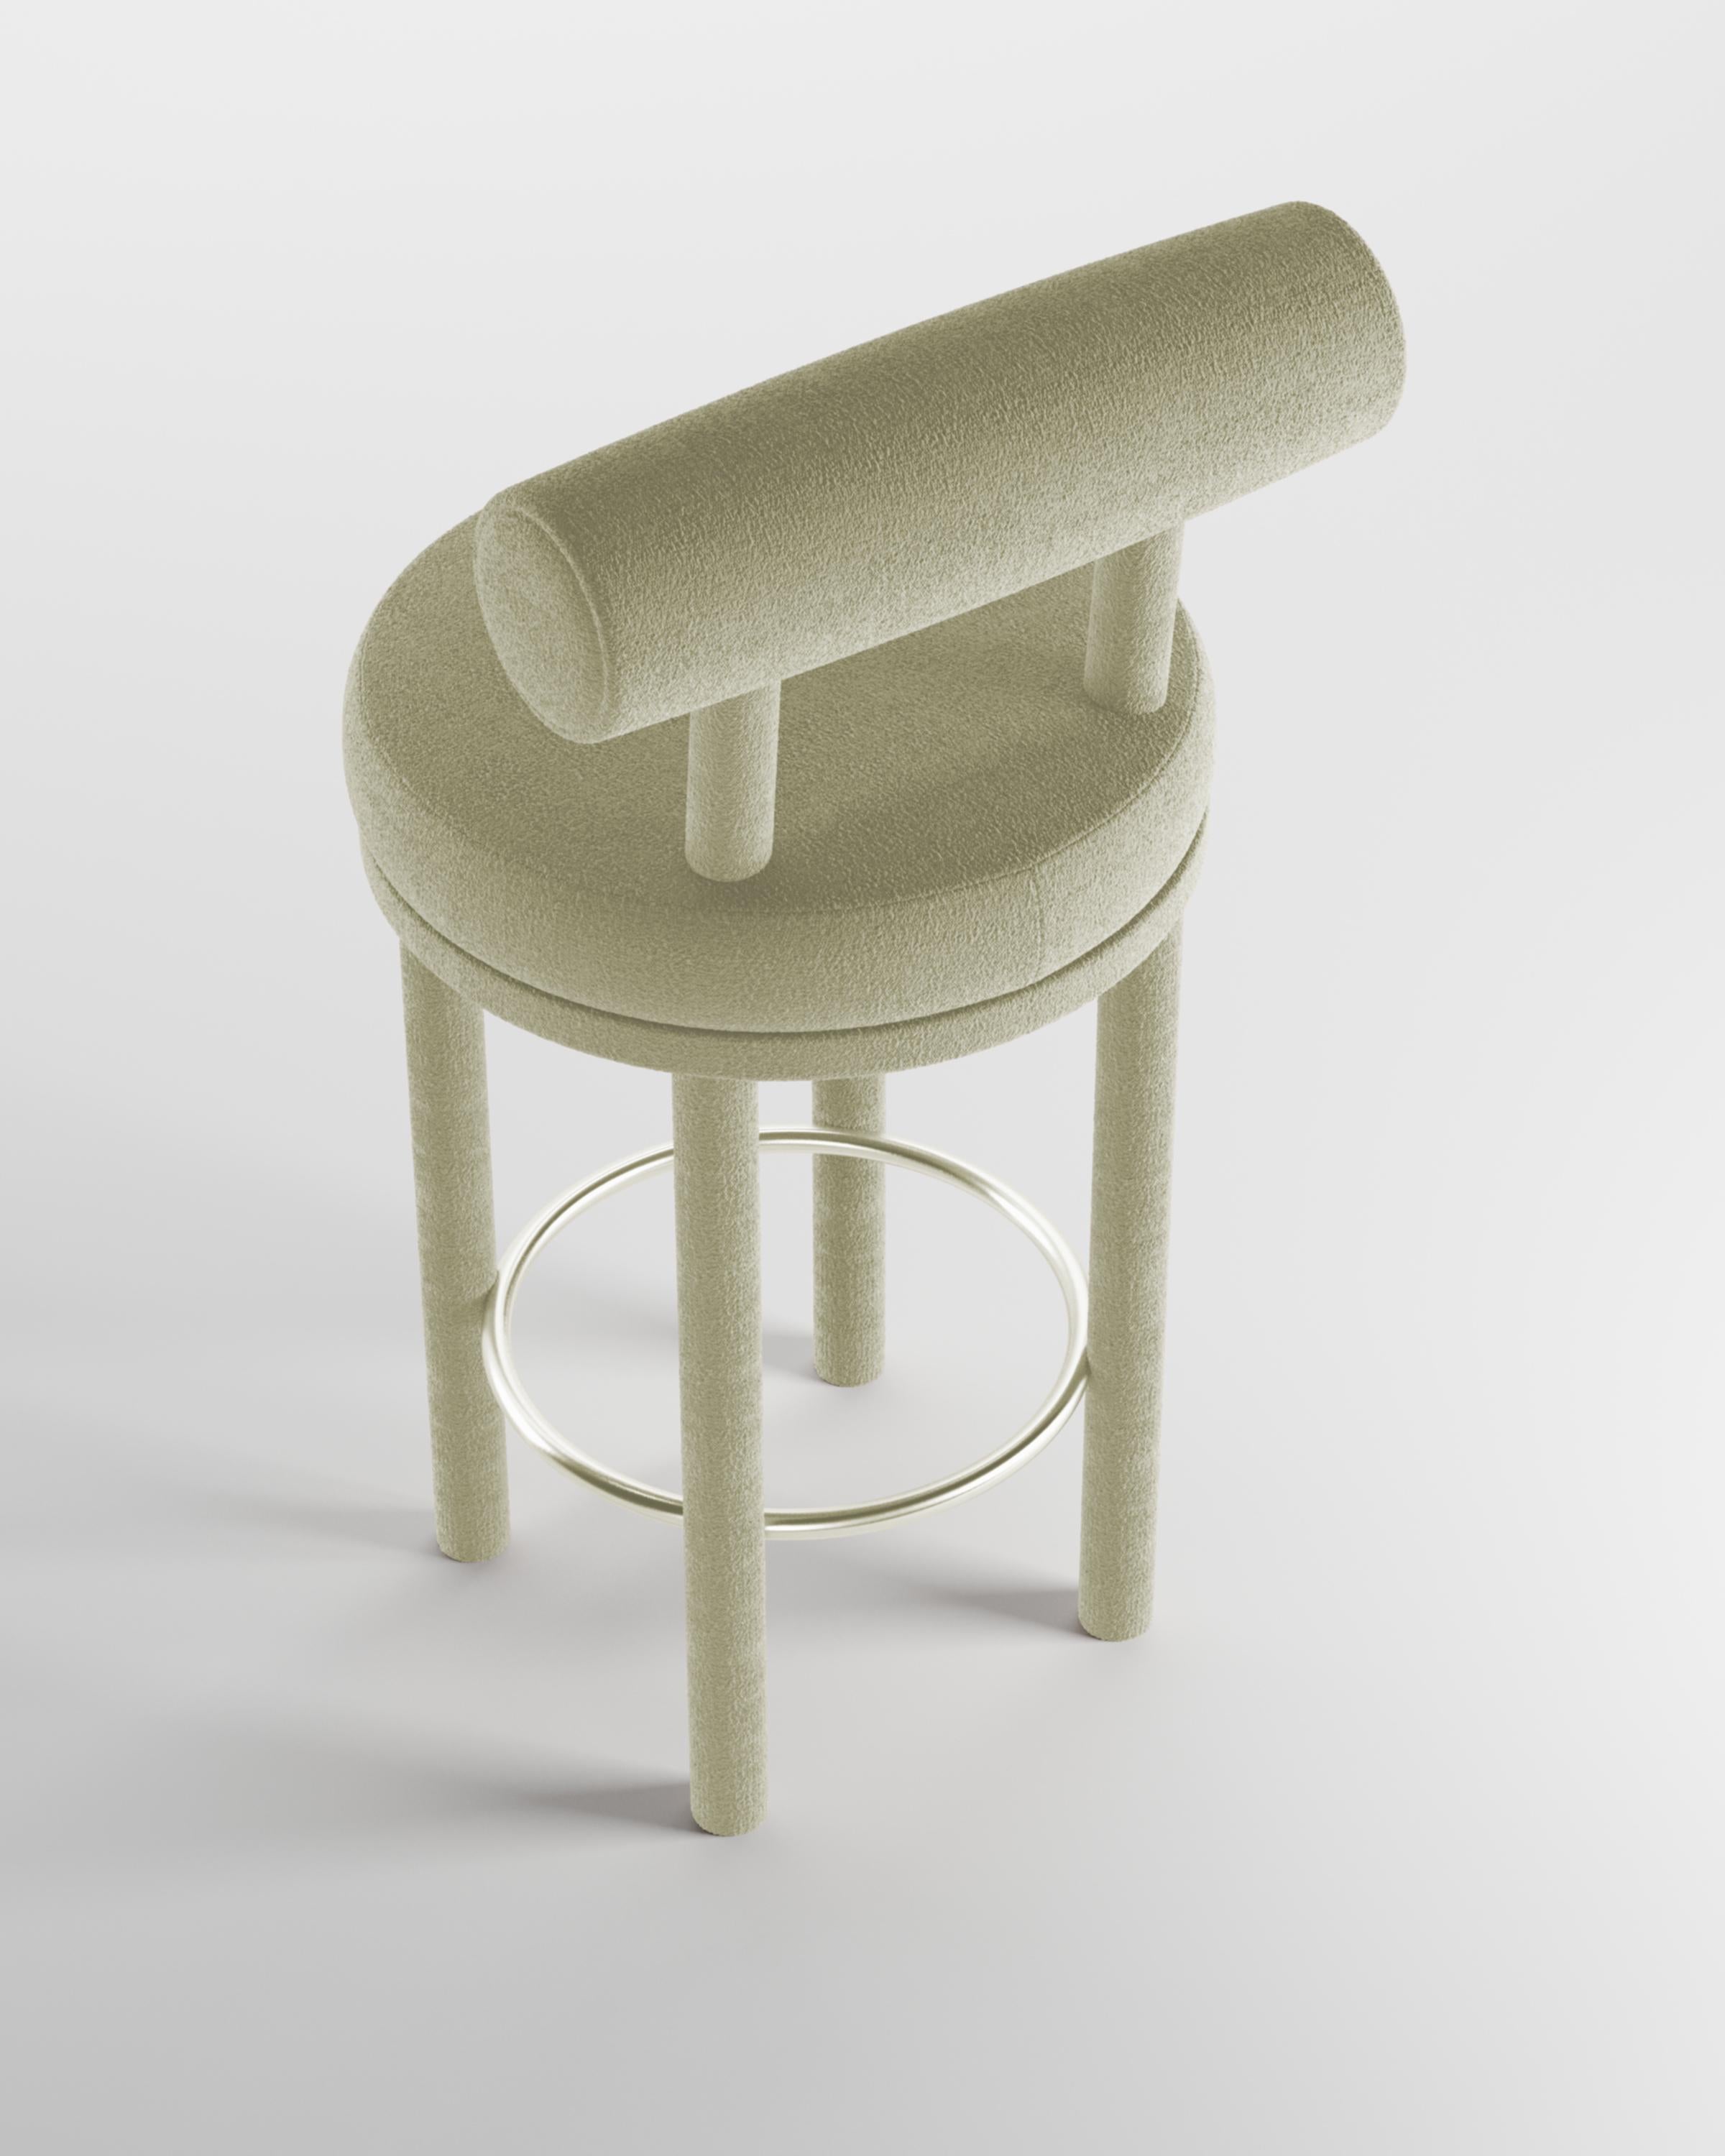 Moderner Barstuhl Moca mit Stoffbezug von Studio Rig für Collector Studio
Ein Stuhl, der sowohl moderne als auch klassische Designansätze miteinander verbindet.
Der strapazierfähige und solide Stuhl ist so konzipiert, dass er sich an den Körper